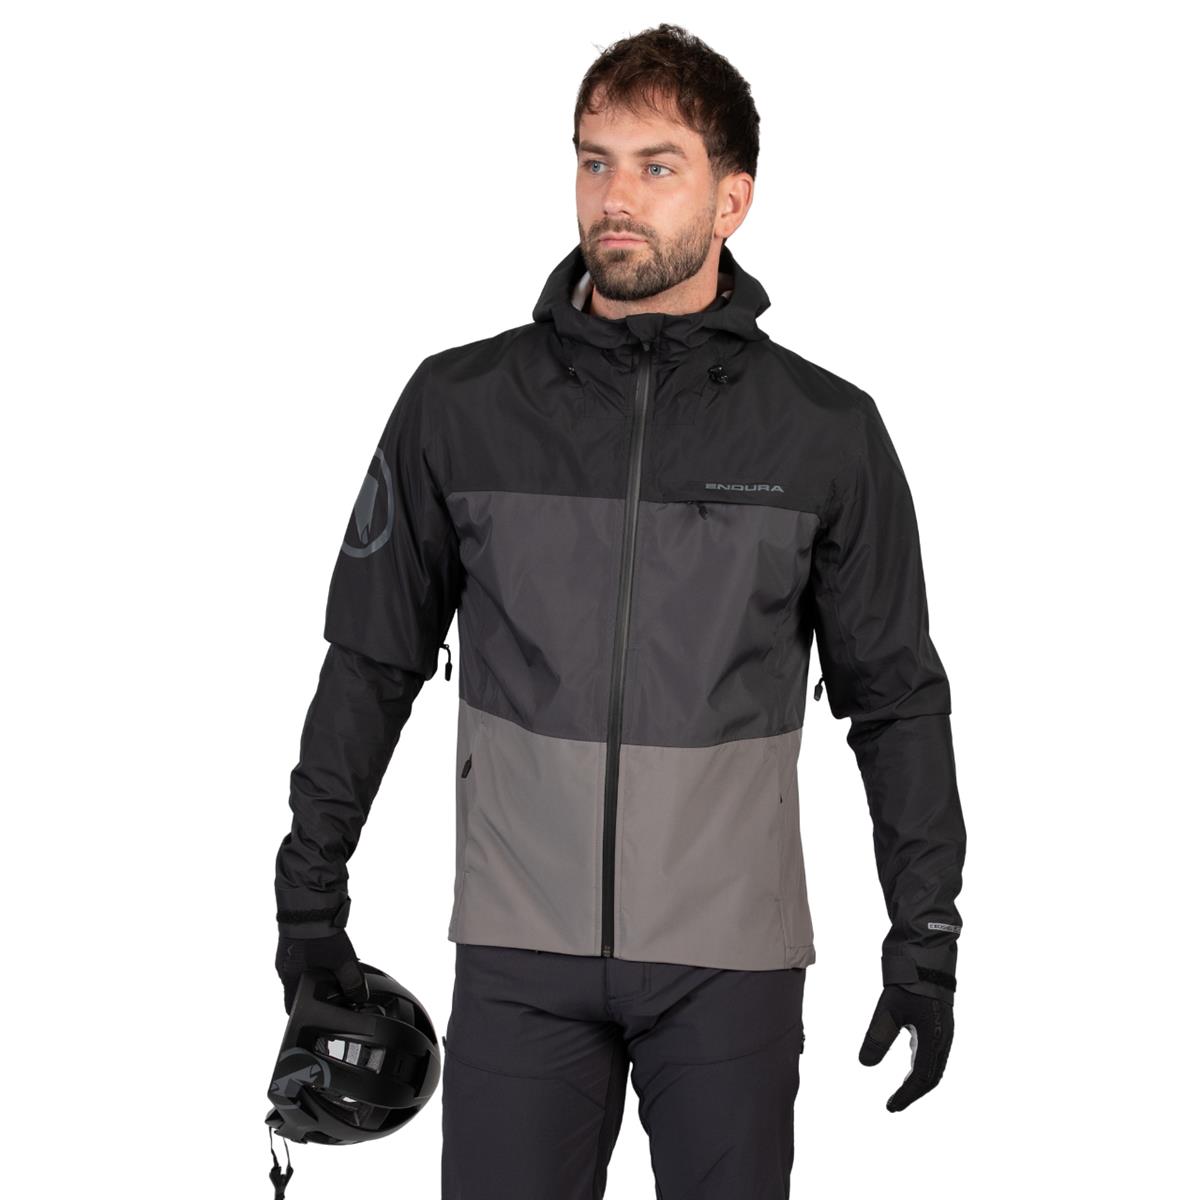 SingleTrack Jacket II Waterproof MTB Jacket Black Size S